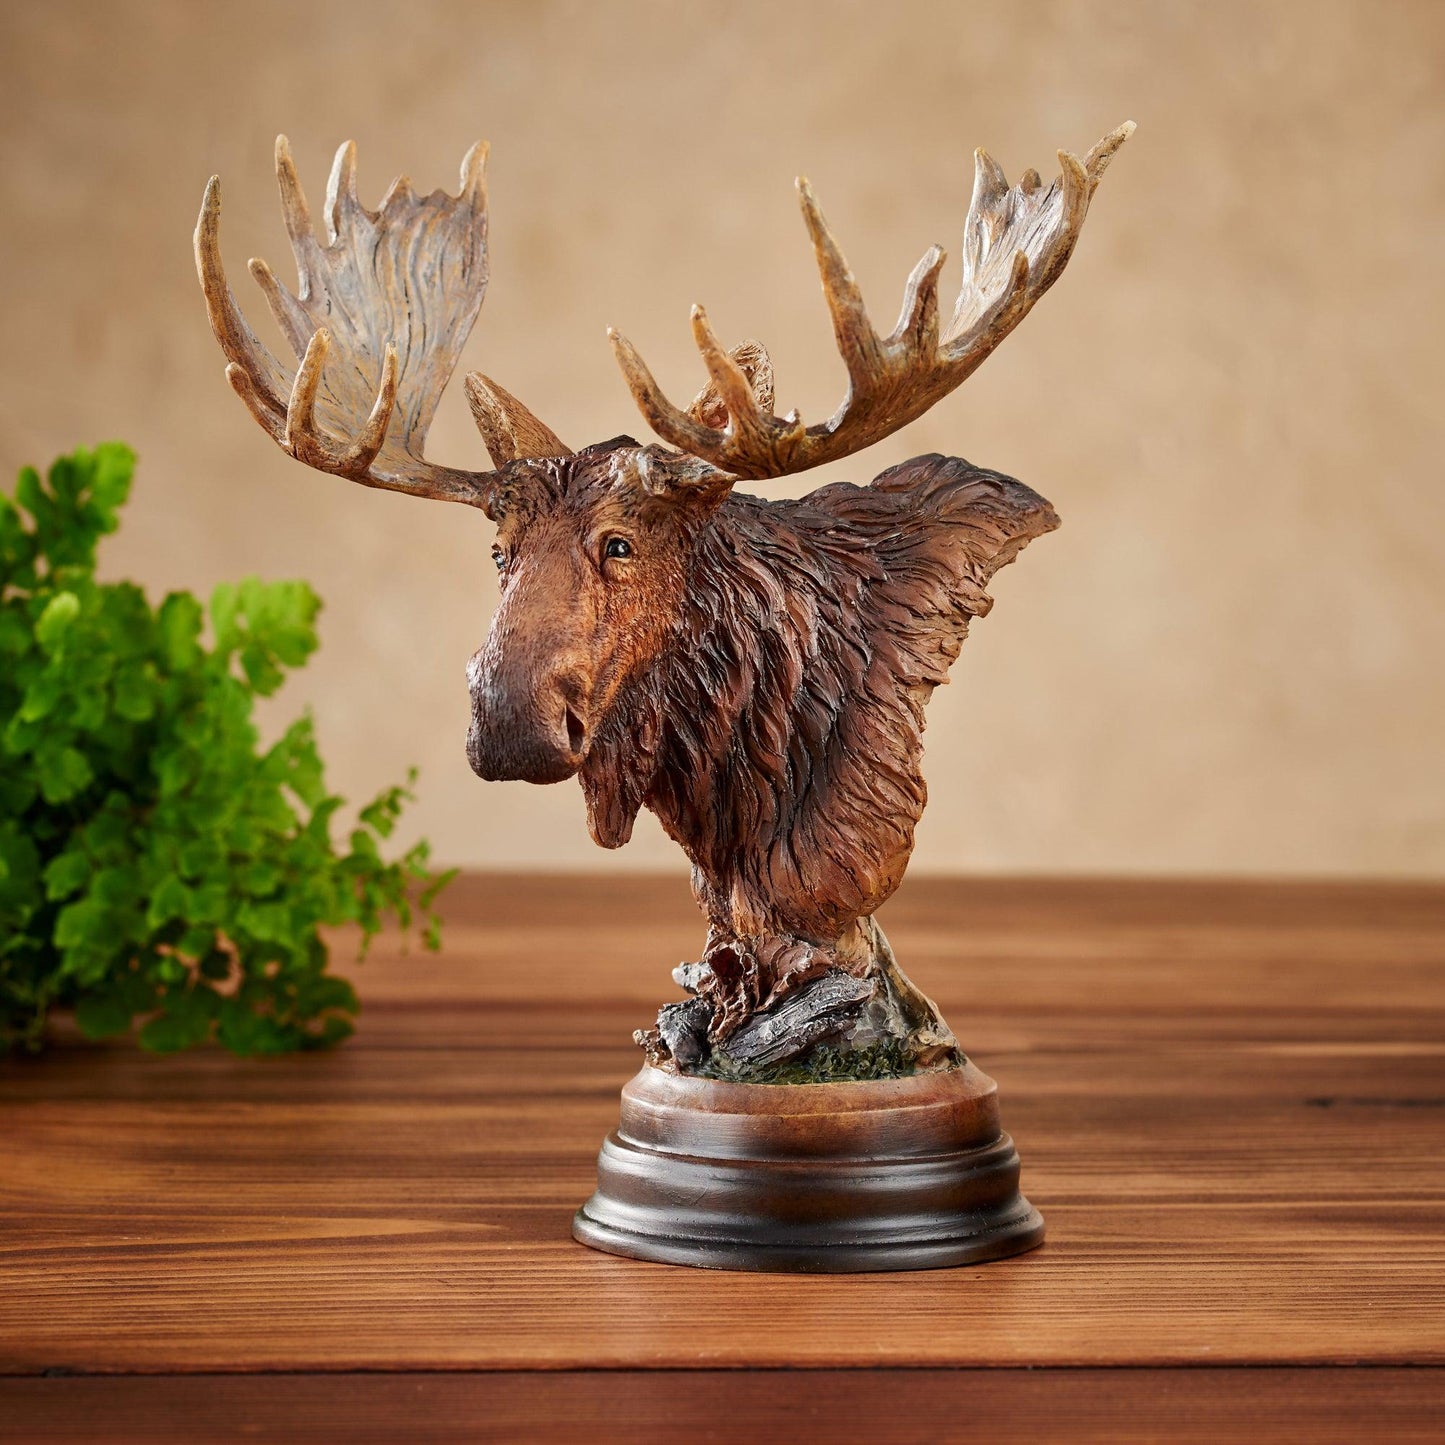 Twig Eater - Moose Mill Creek Sculpture - Wild Wings